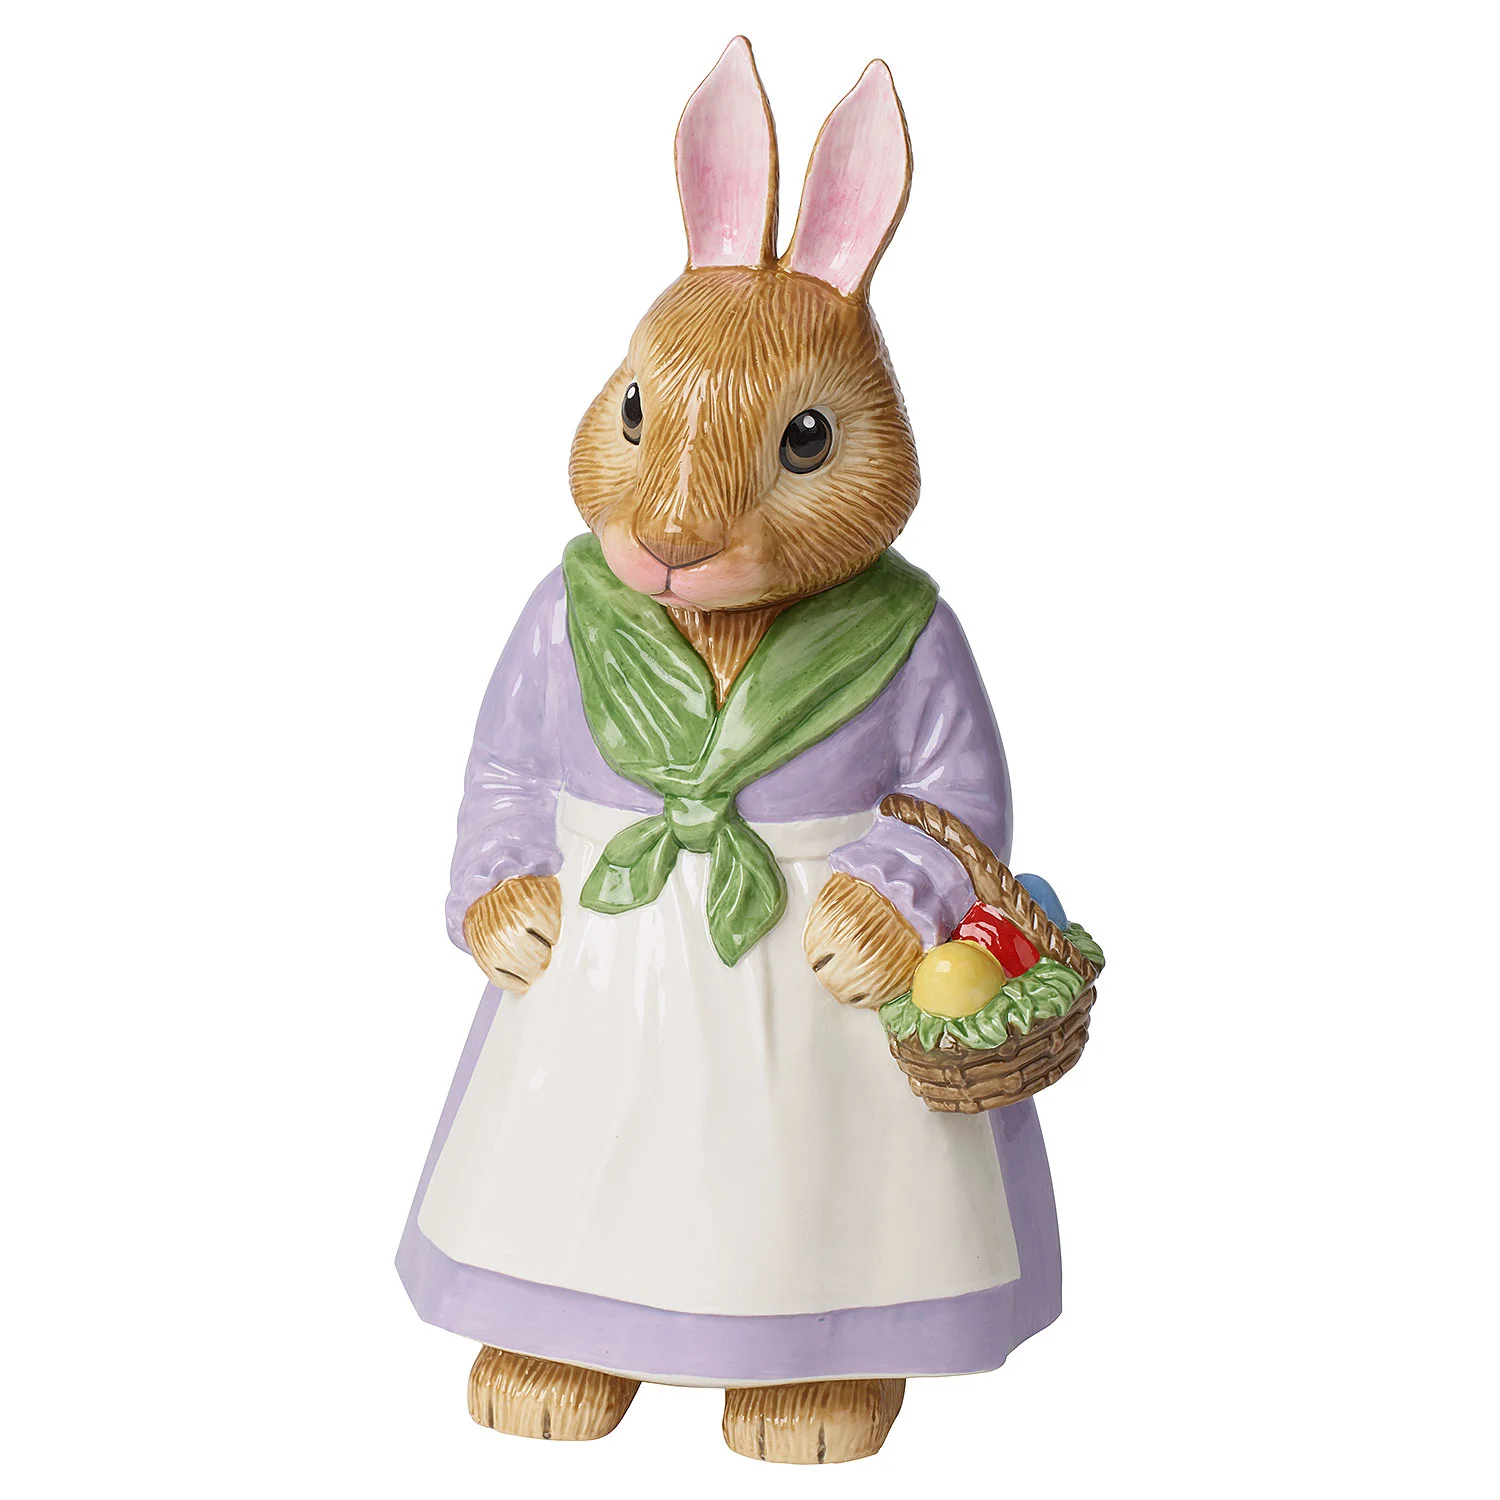 Bunny Tales Декоративная фигурка "Пасхальный кролик Мама Эмма" 28 см